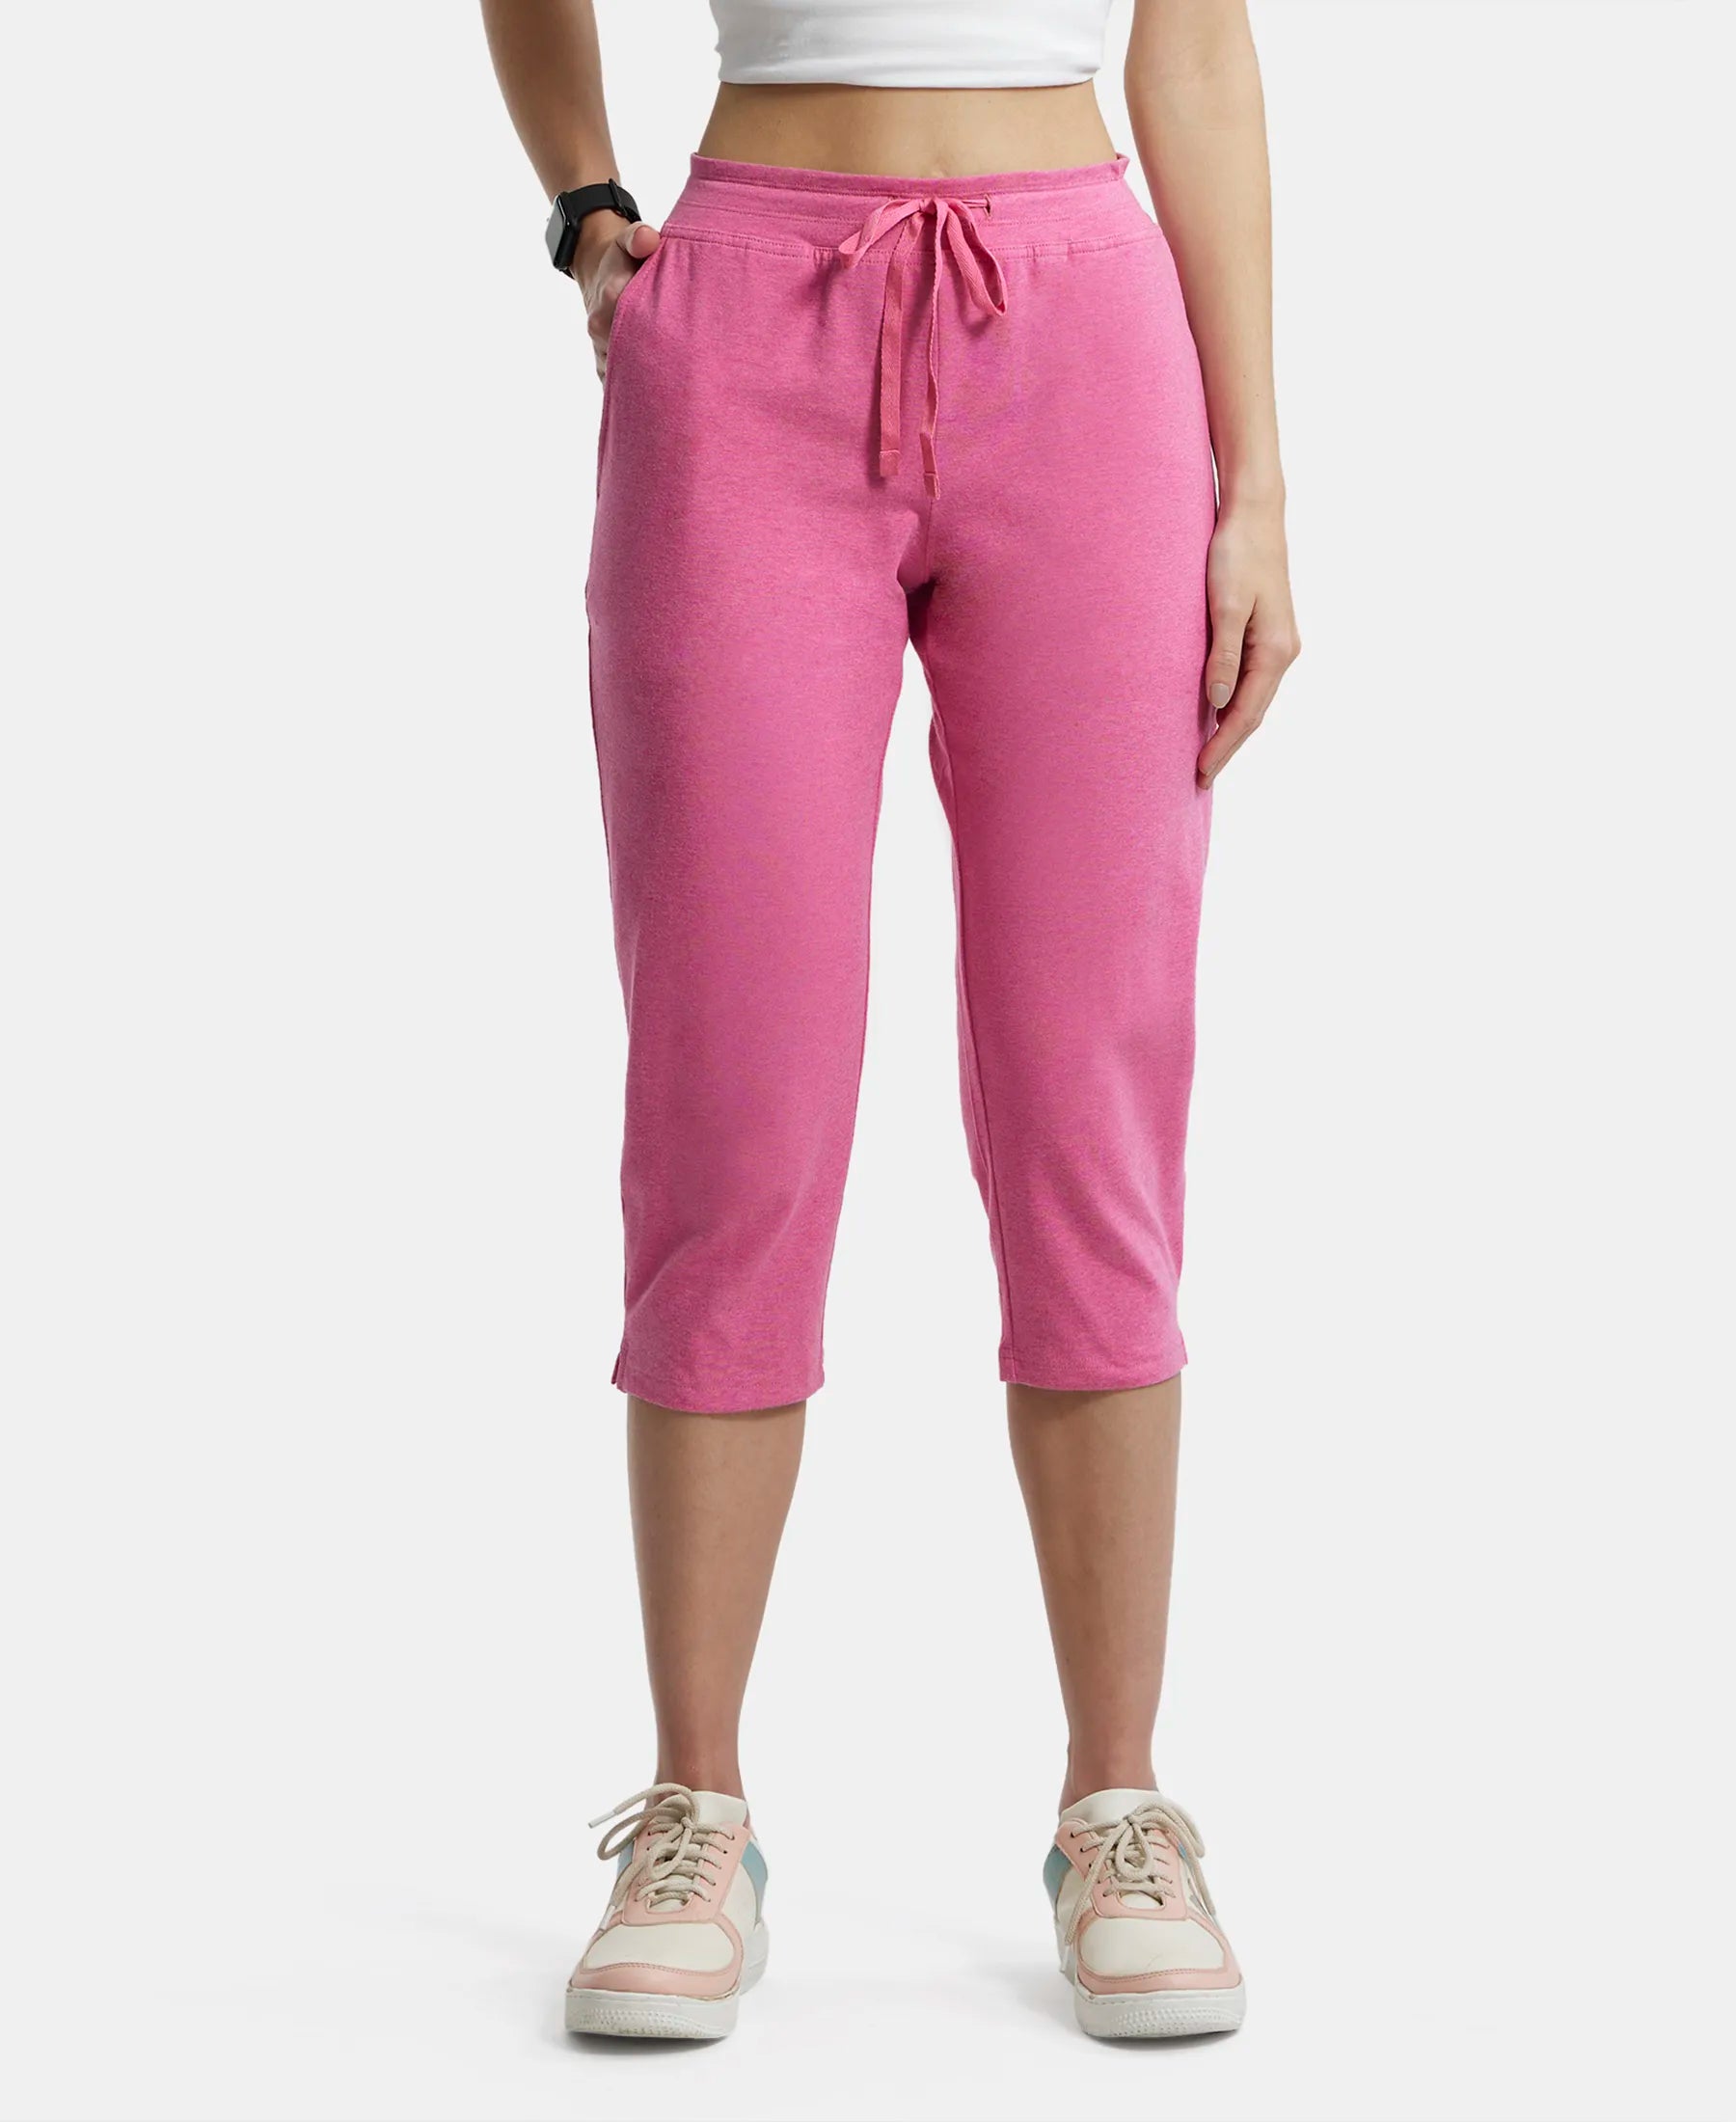 Buy Super Combed Cotton Elastane Slim Fit Printed Capri with Side Pockets -  Ibis Rose Melange 1300